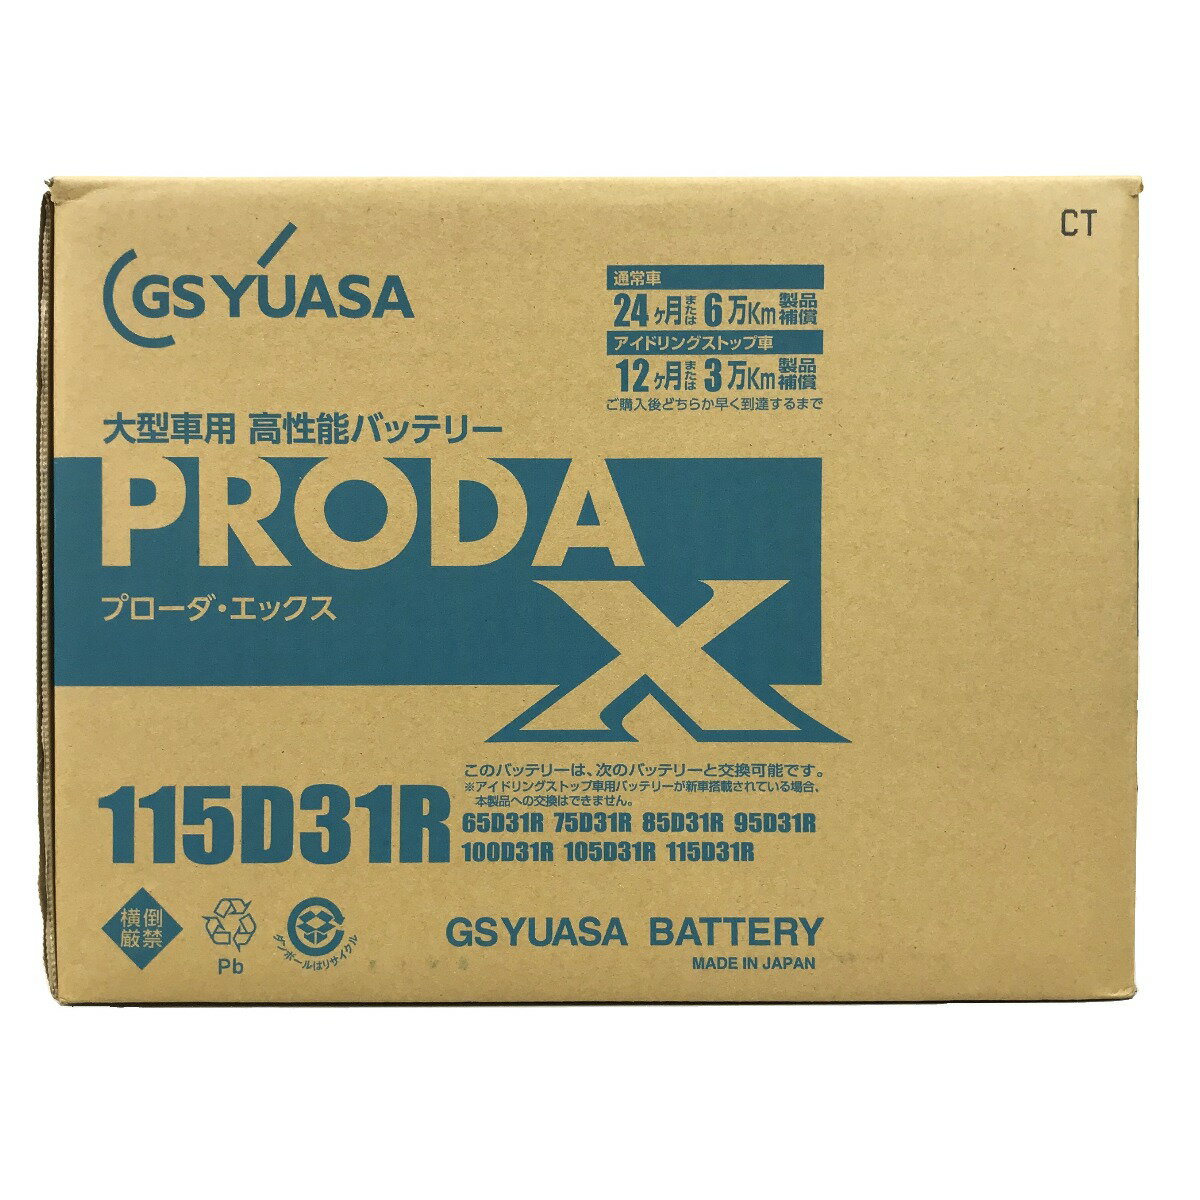 ##【中古】GS YUASA 大型車用 高性能カーバッテリー PRODA X 115D31R Sランク